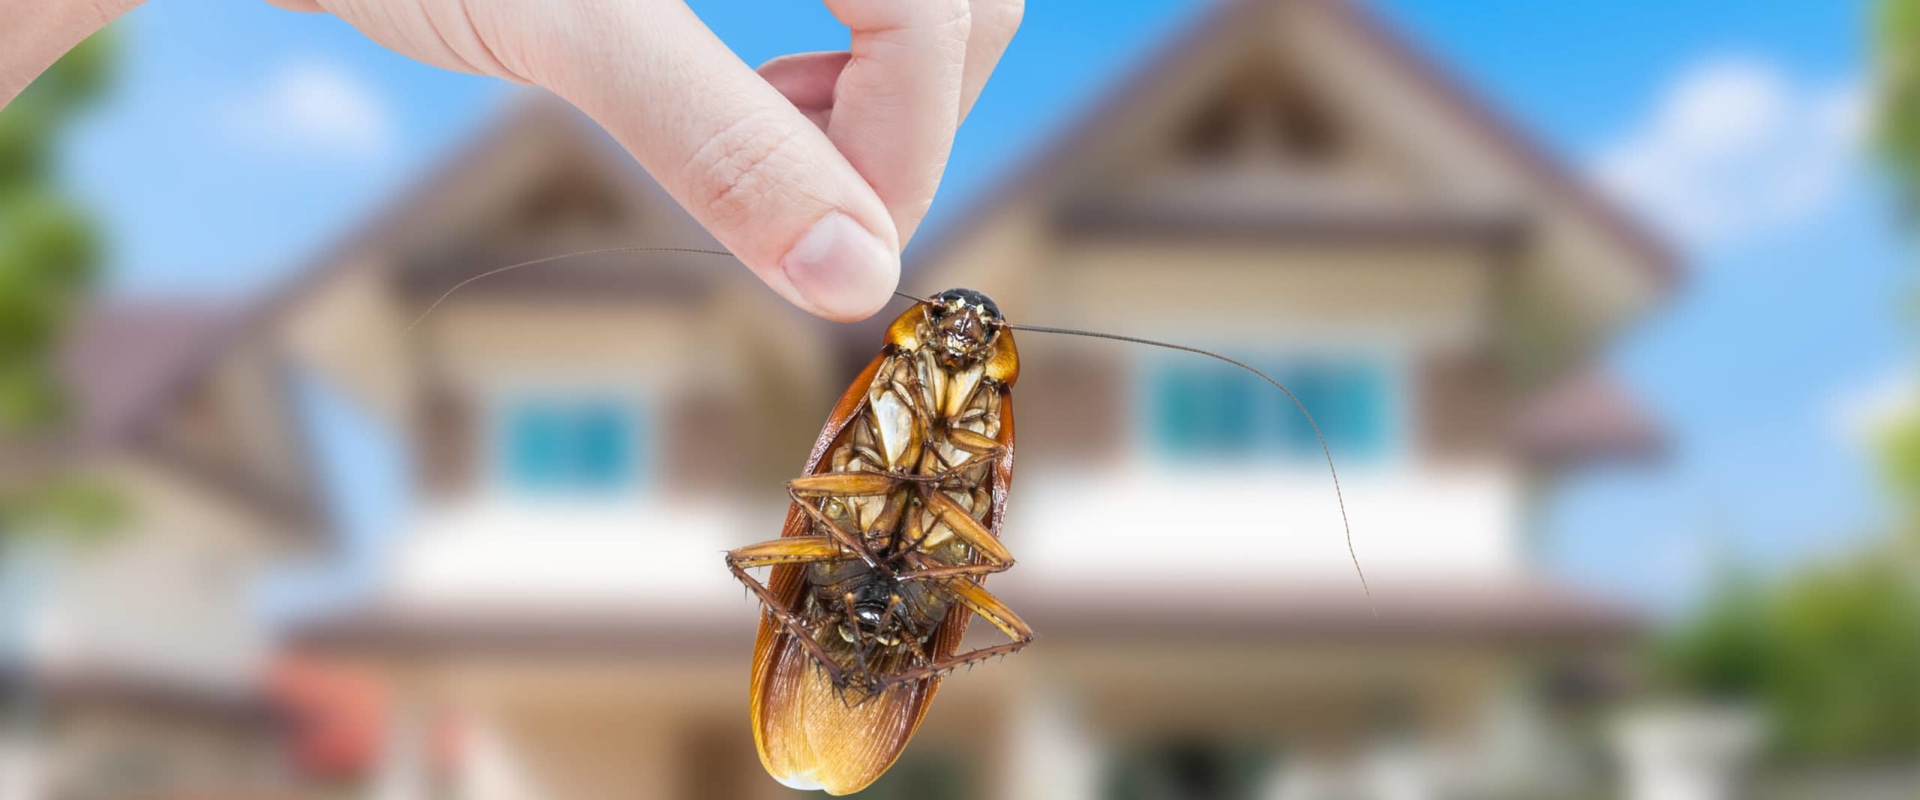 DIY Methods for Home Pest Extermination